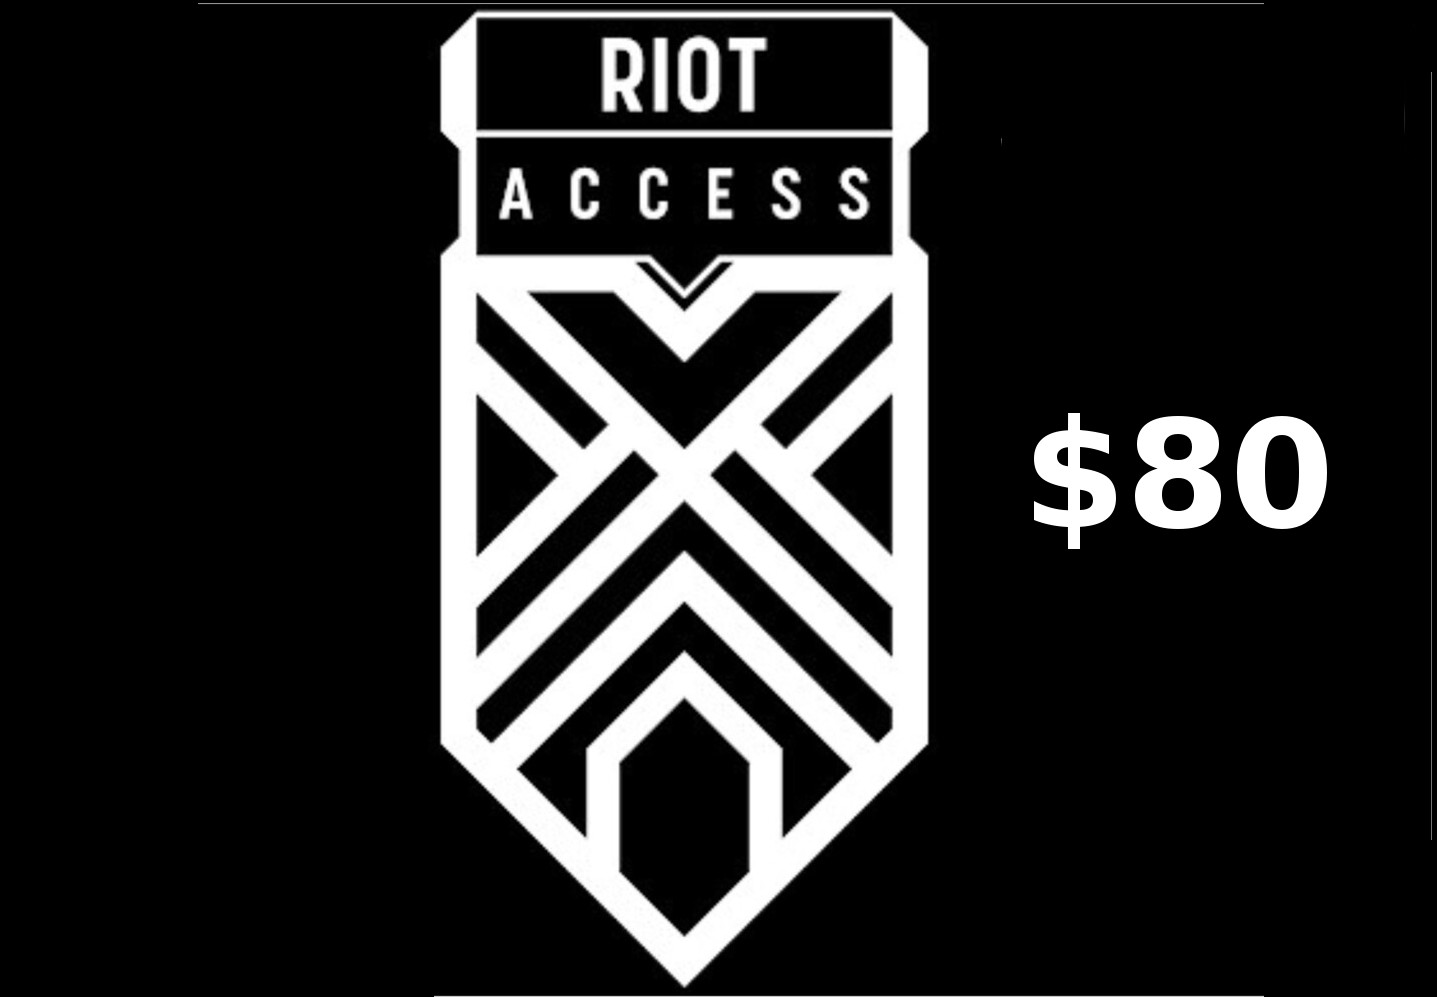 Riot Access $80 Code LATAM